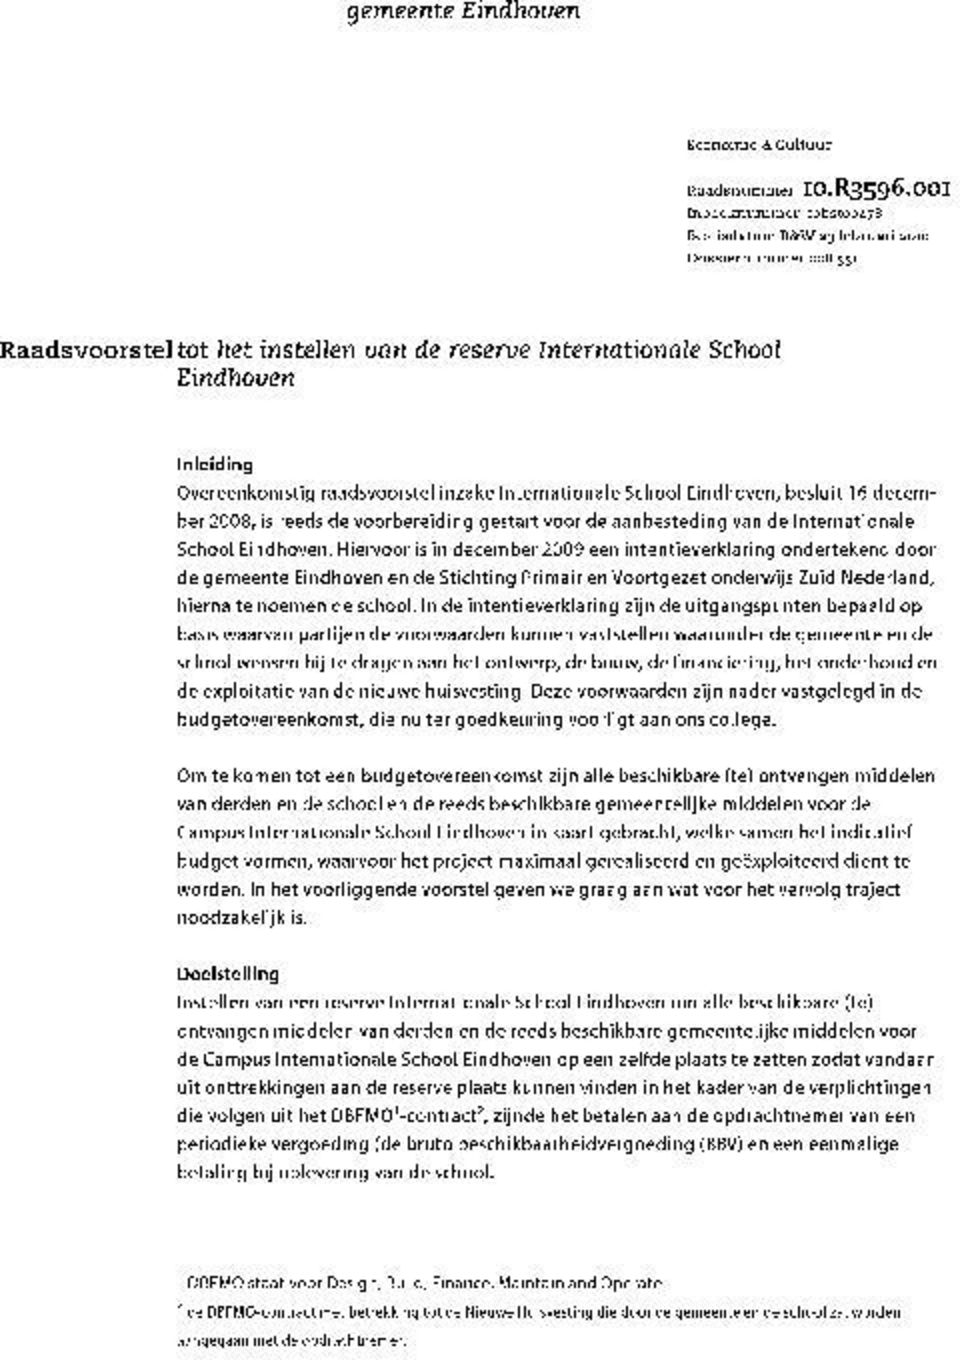 raadsvoorstel inzake Internationale School Eindhoven, besluit 16 december 2008, is reeds de voorbereiding gestart voor de aanbesteding van de Internationale School Eindhoven.